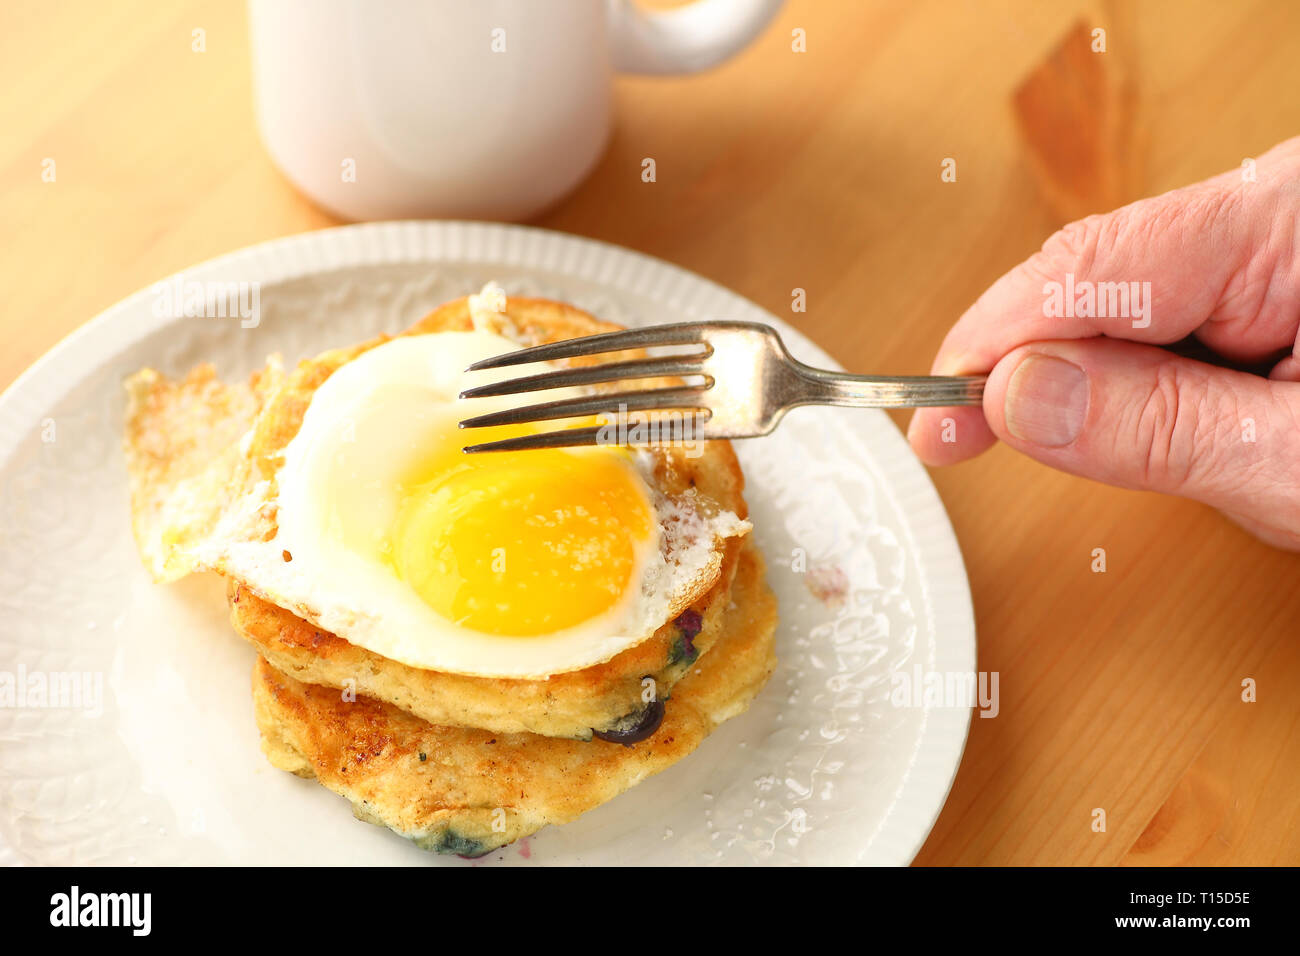 Pancakes aux myrtilles surmontée d'œuf frit avec man's hand holding fork Banque D'Images